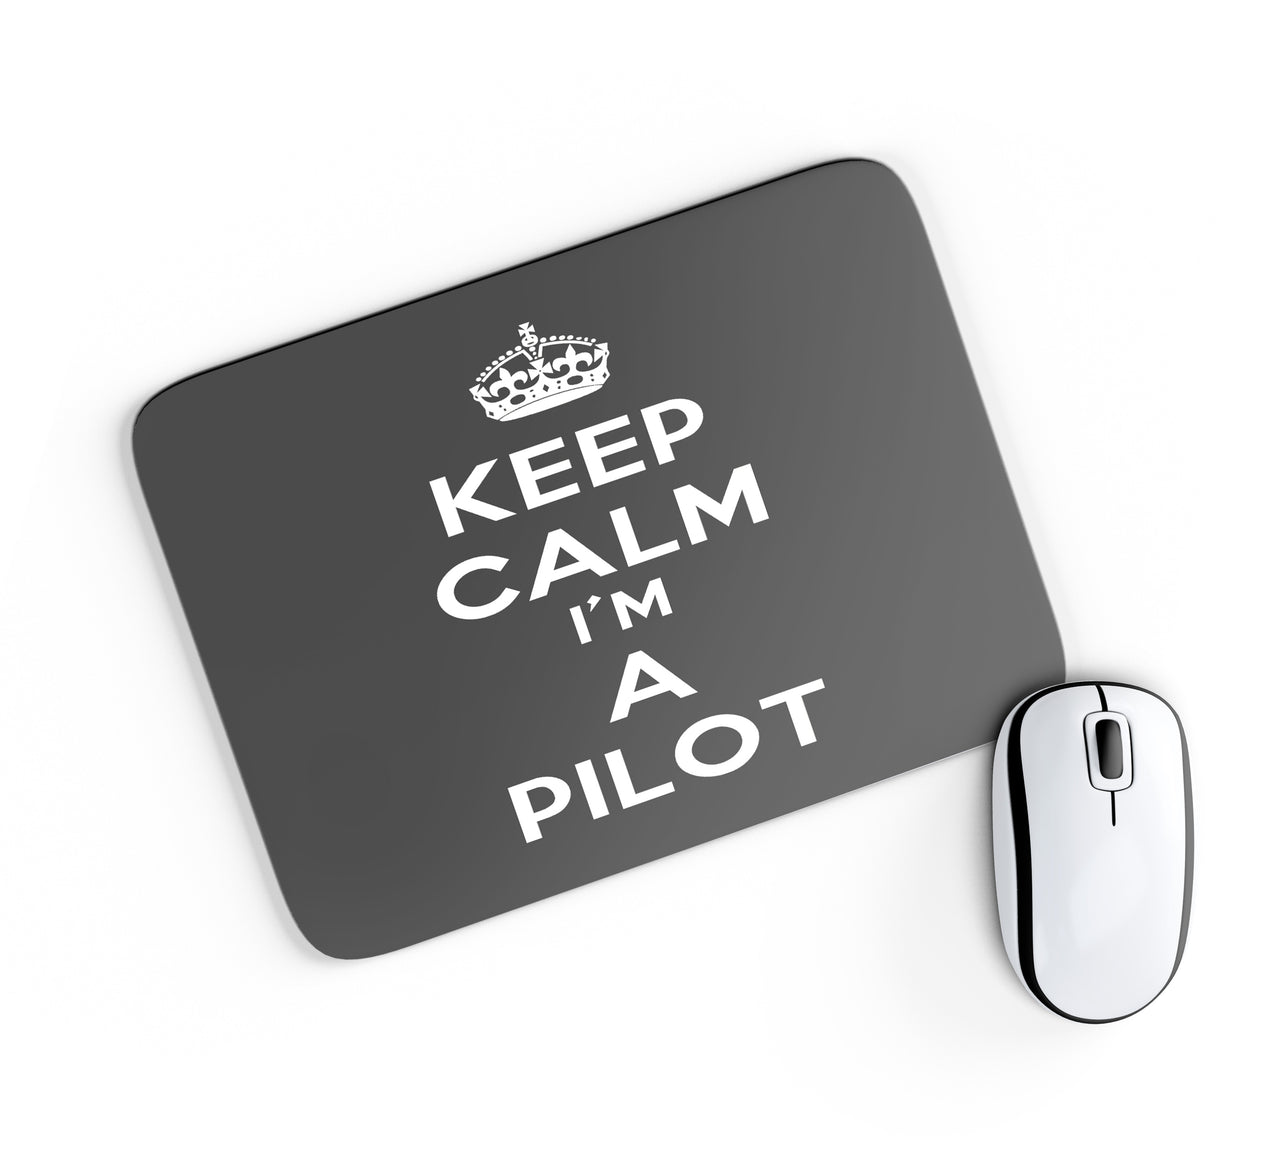 Keep Calm I'm a Pilot Designed Mouse Pads